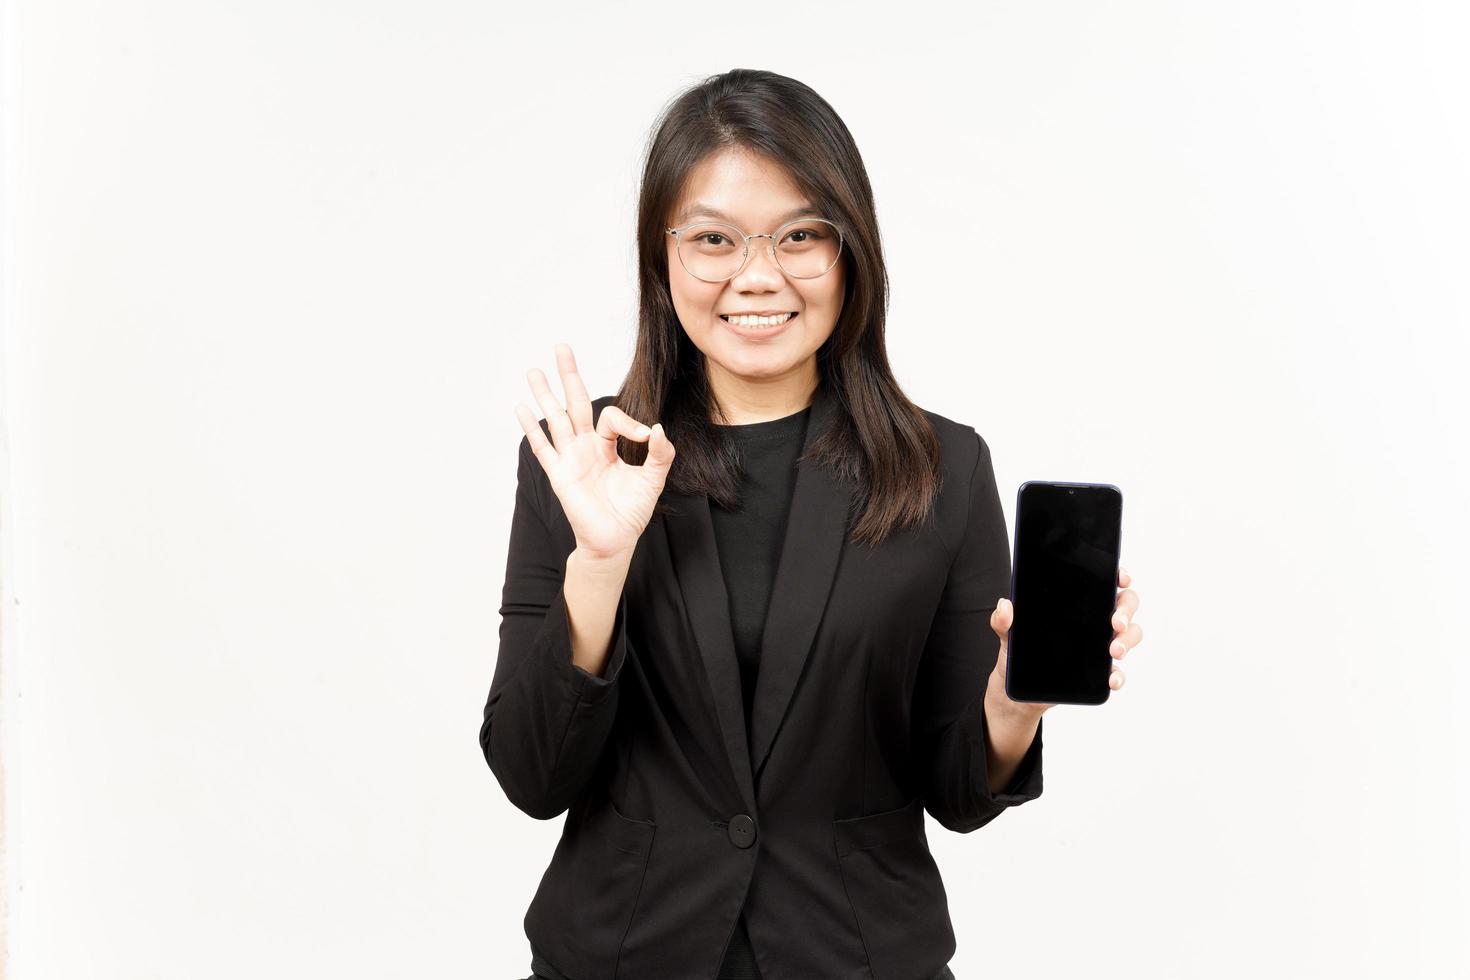 montrant applications ou les publicités sur Vide écran téléphone intelligent de magnifique asiatique femme portant noir blazer photo